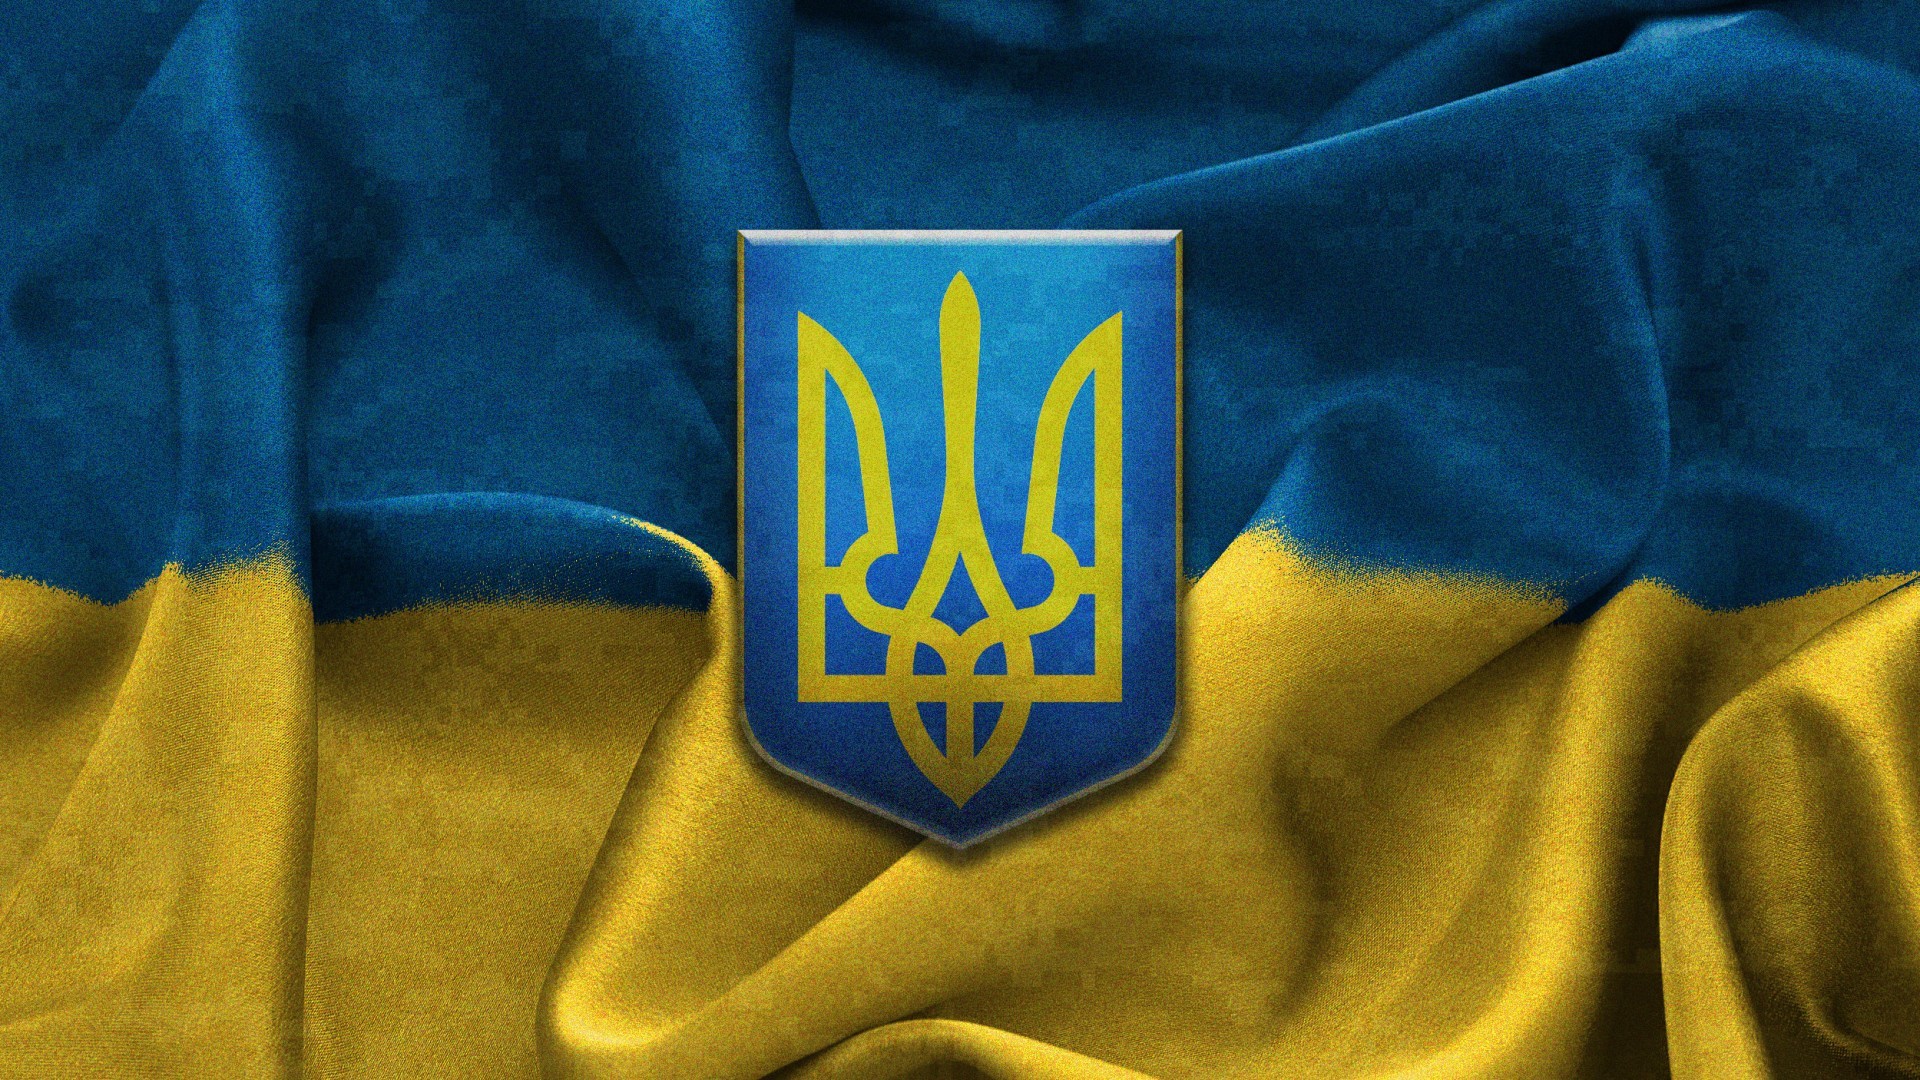 General 1920x1080 Ukraine flag flag of Ukraine coat of arms